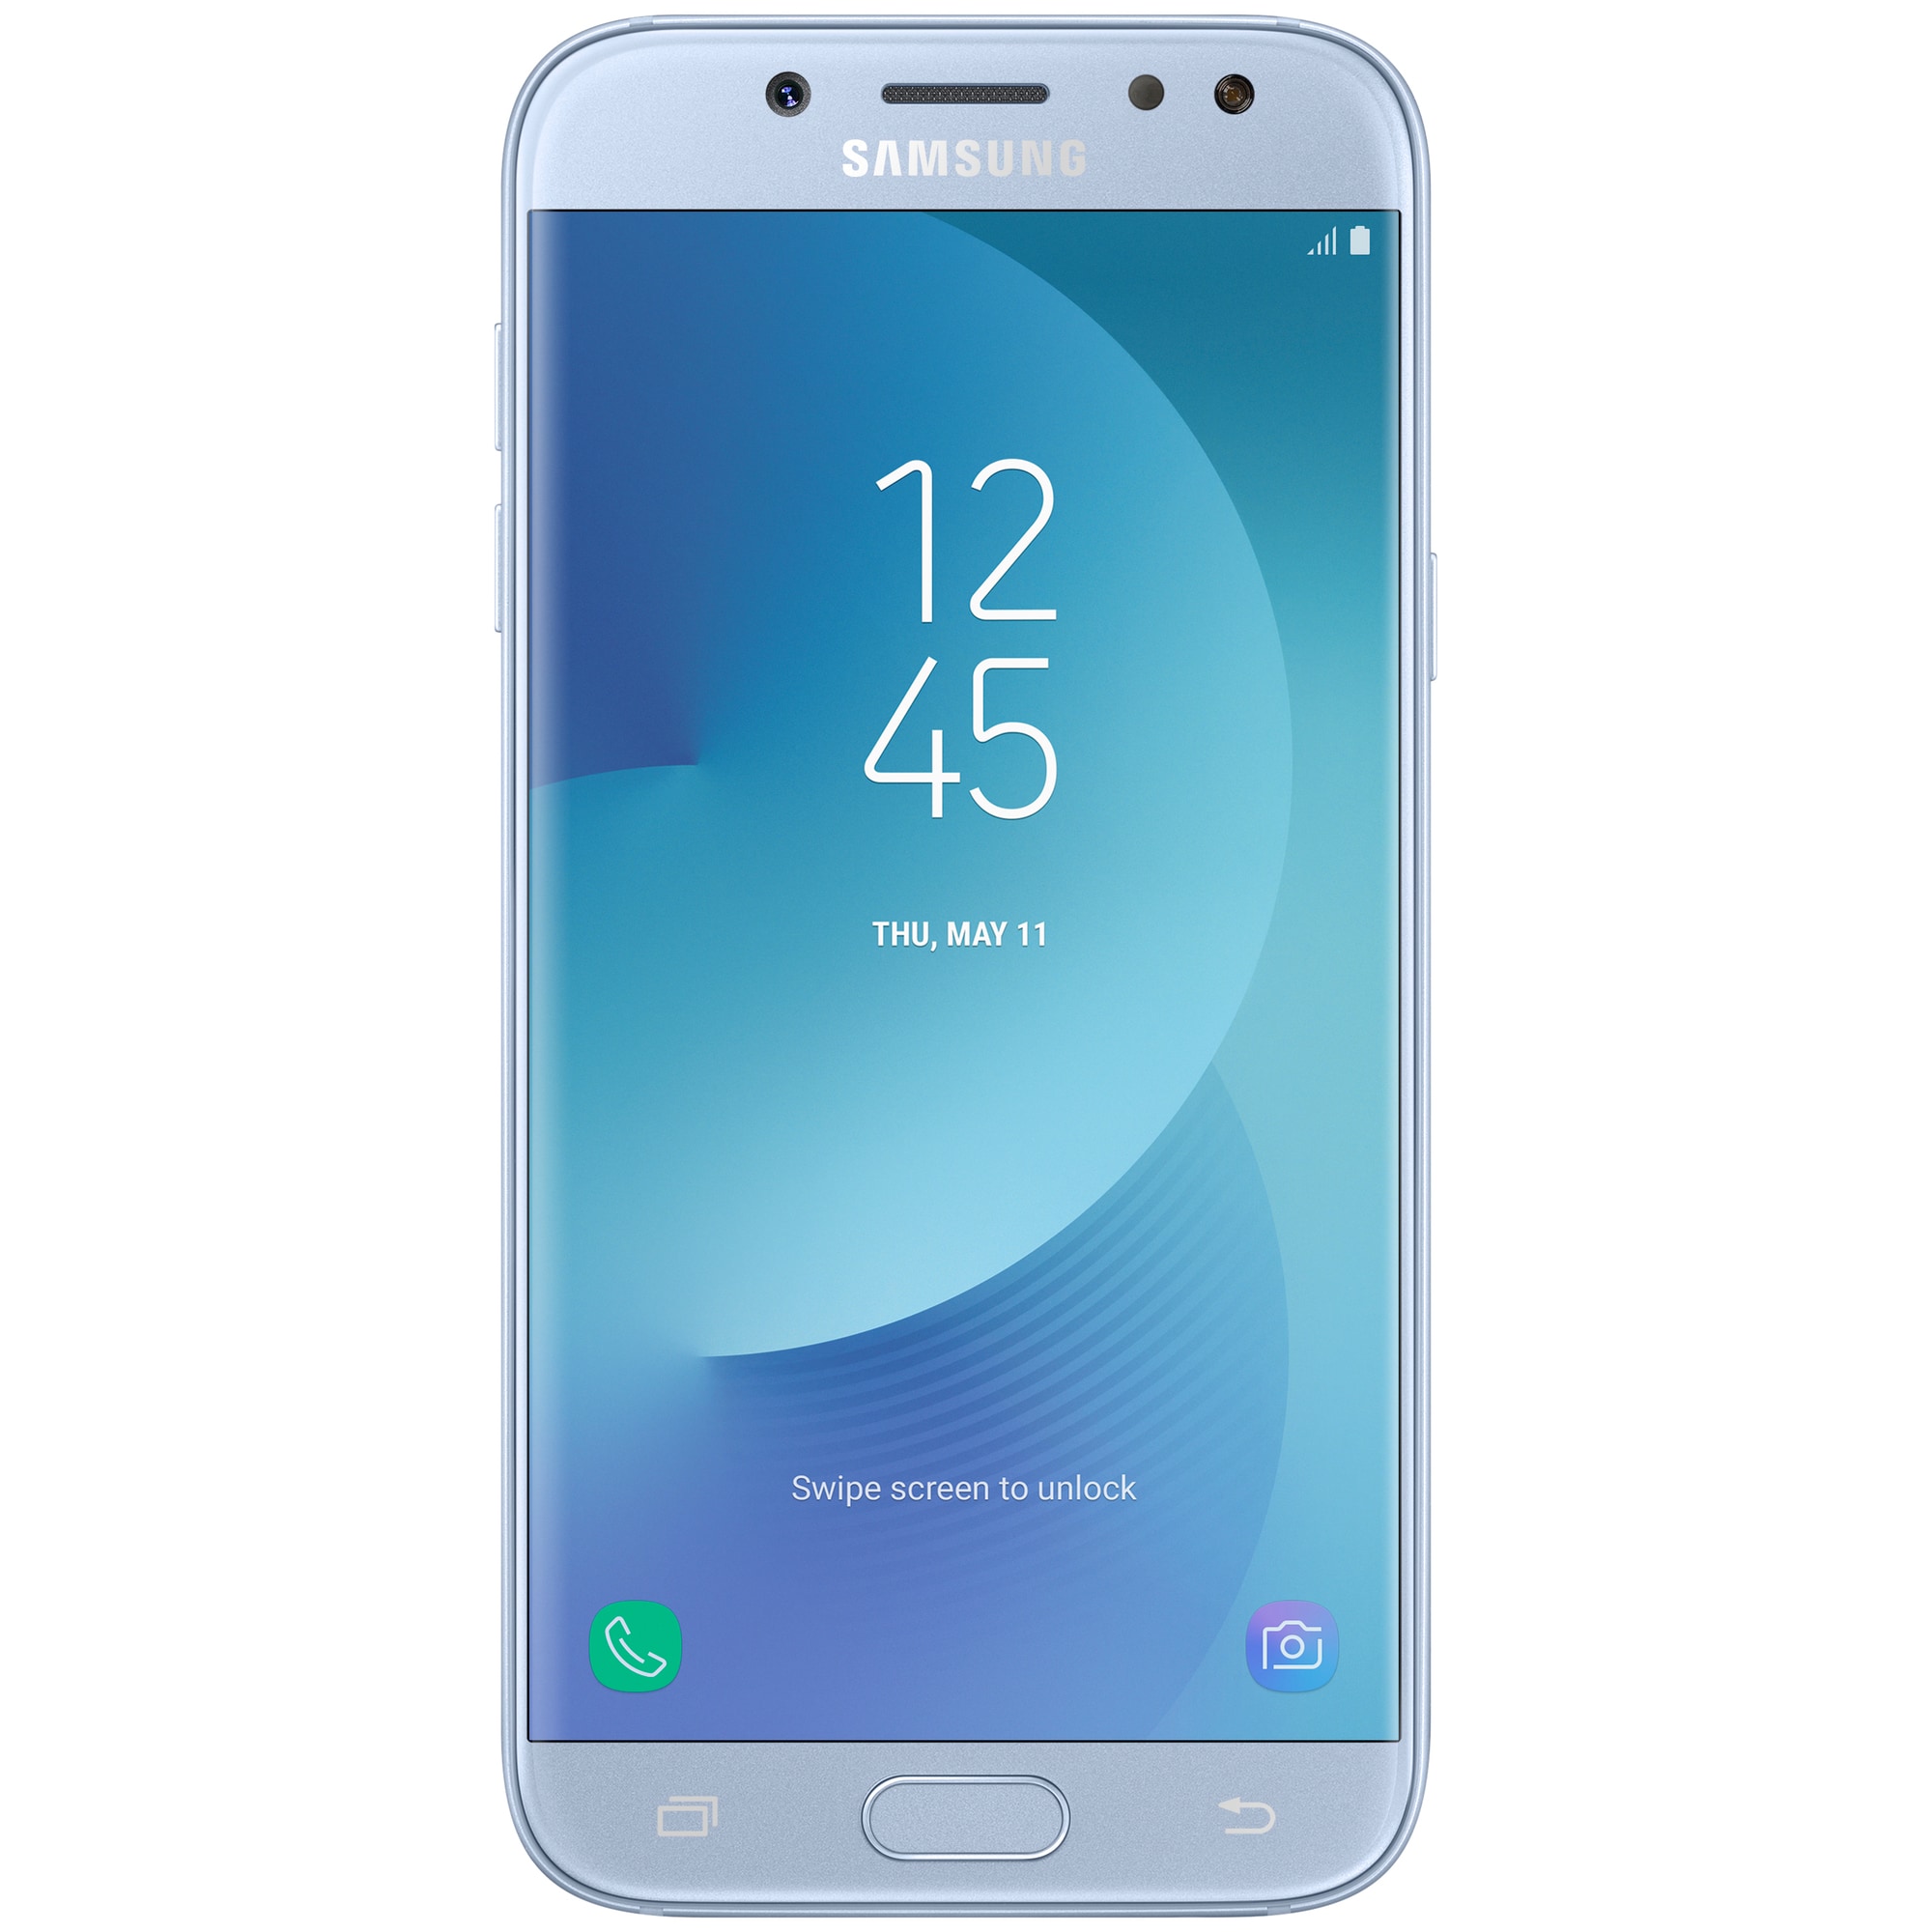 Samsung Galaxy J5 2017 smarttelefon (sølvblå) - Elkjøp